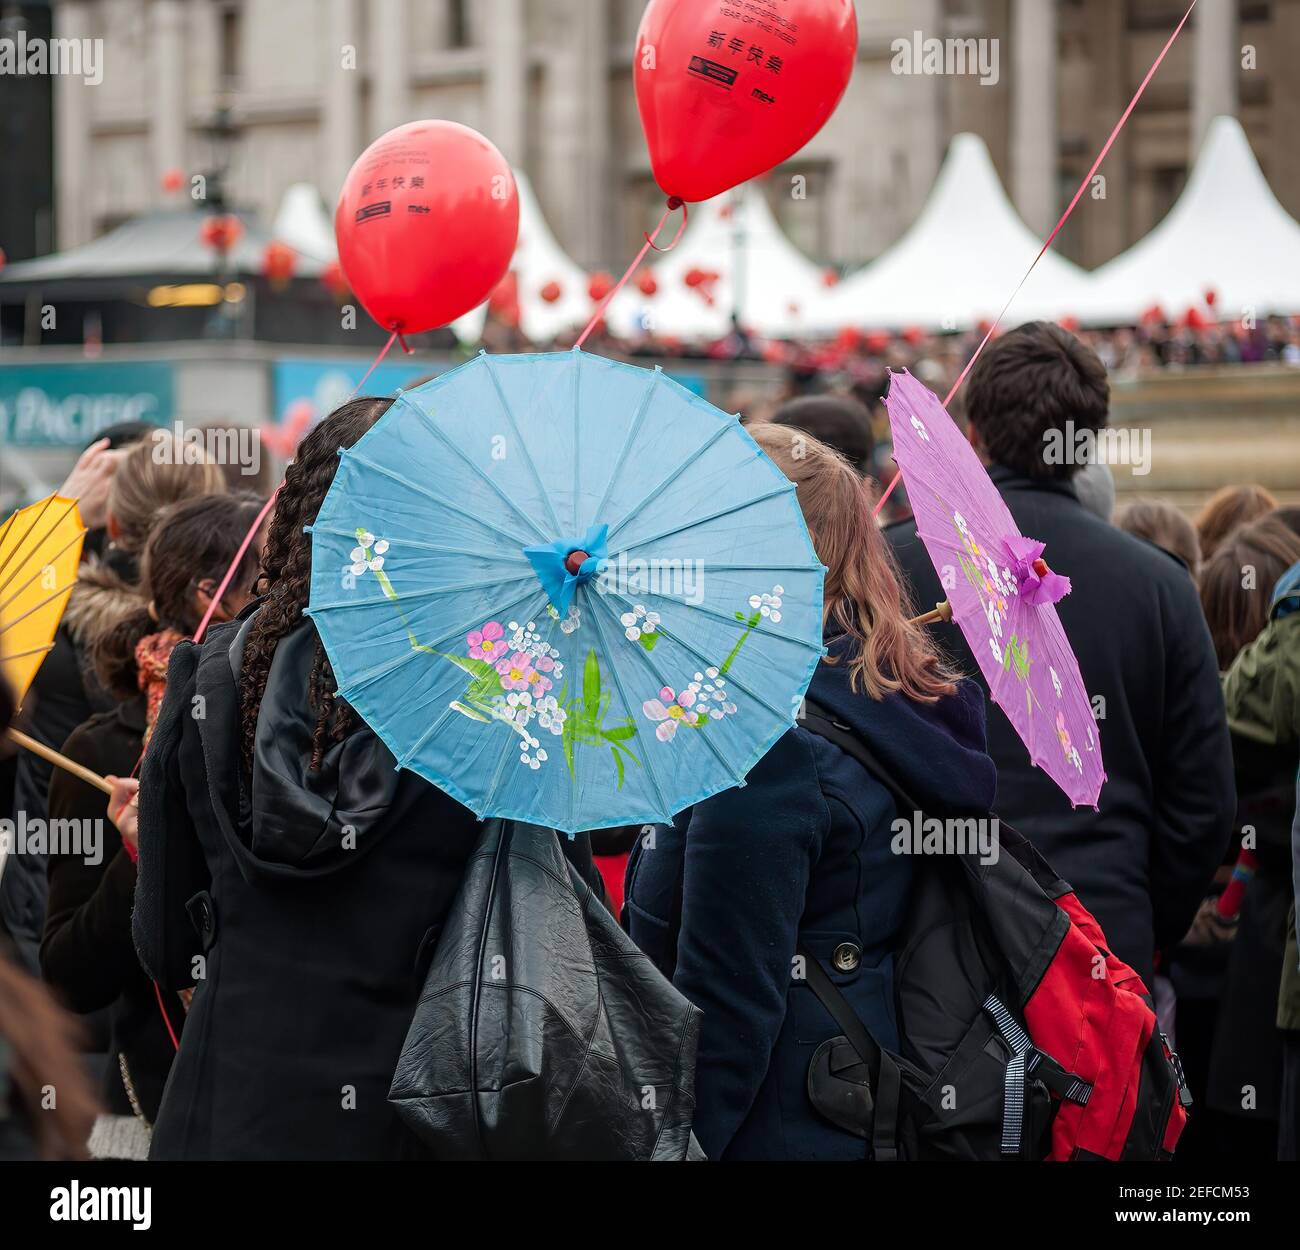 LONDRES, Royaume-Uni - 21 FÉVRIER 2010 : parasols en papier chinois à Trafalgar Square pendant les célébrations du nouvel an de Chines Banque D'Images